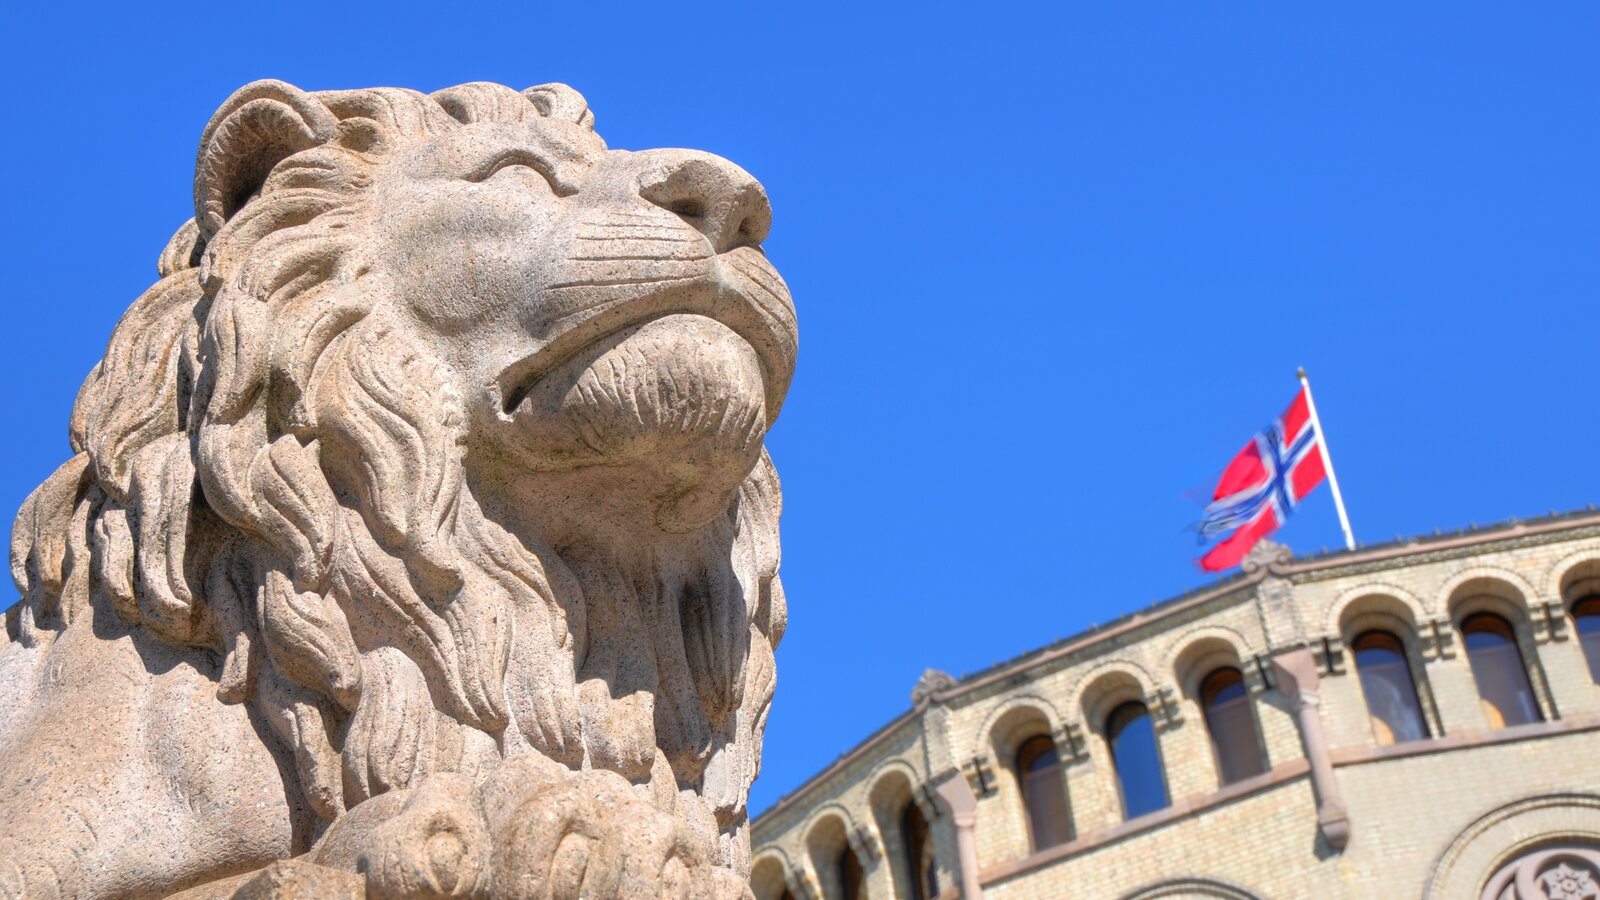 Løve foran Stortinget